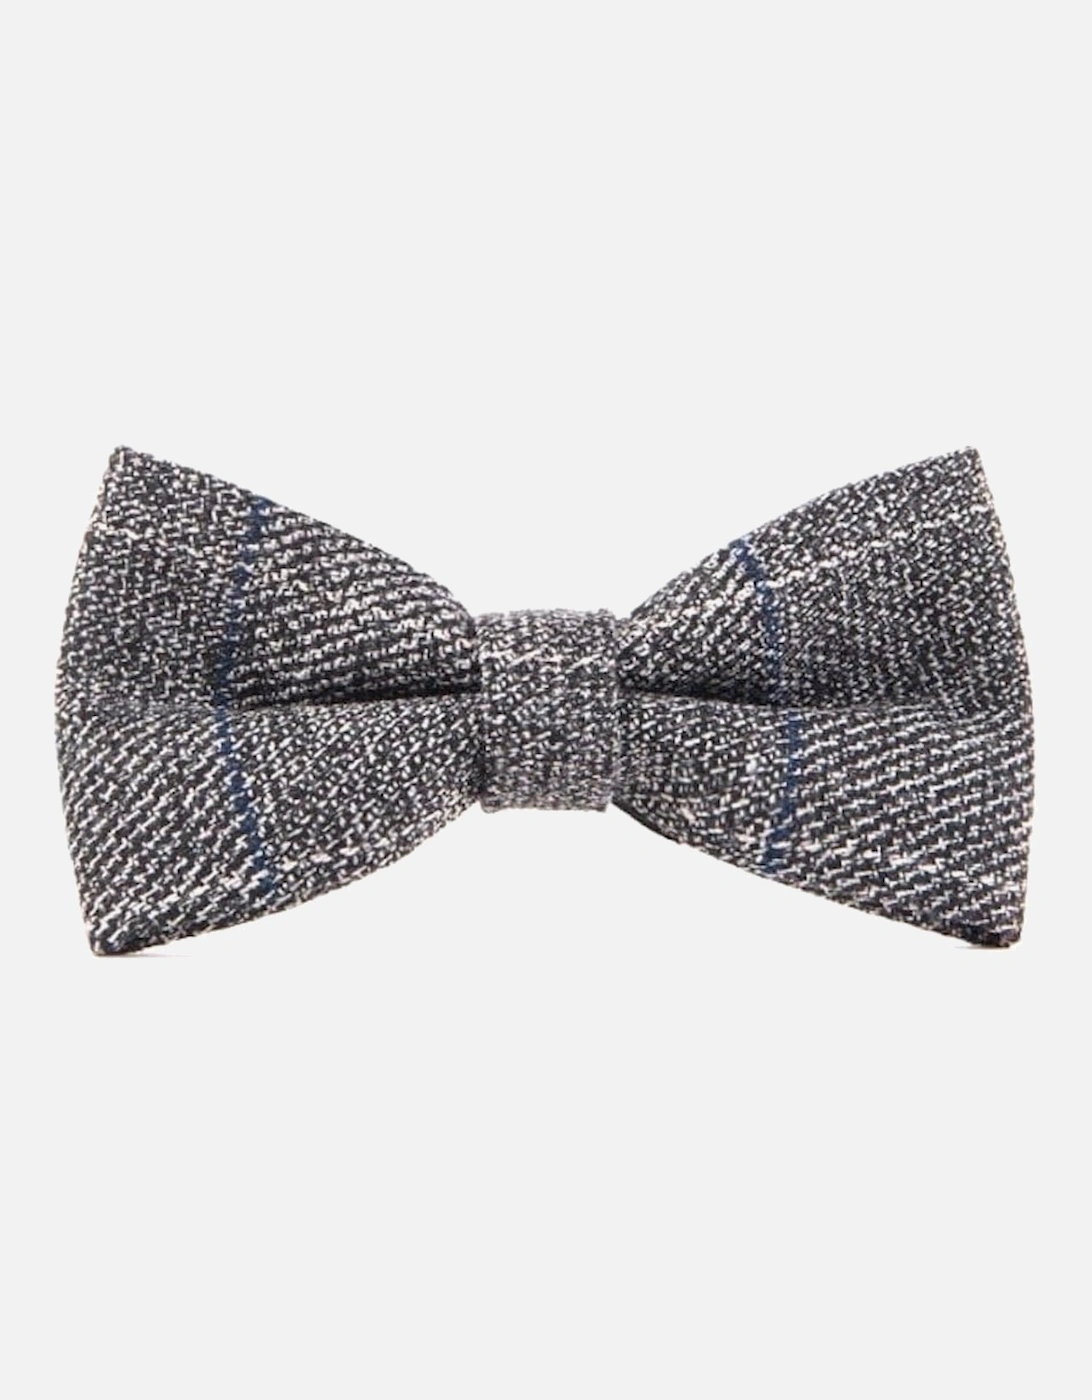 Scott Grey Tweed Bow Tie, 2 of 1